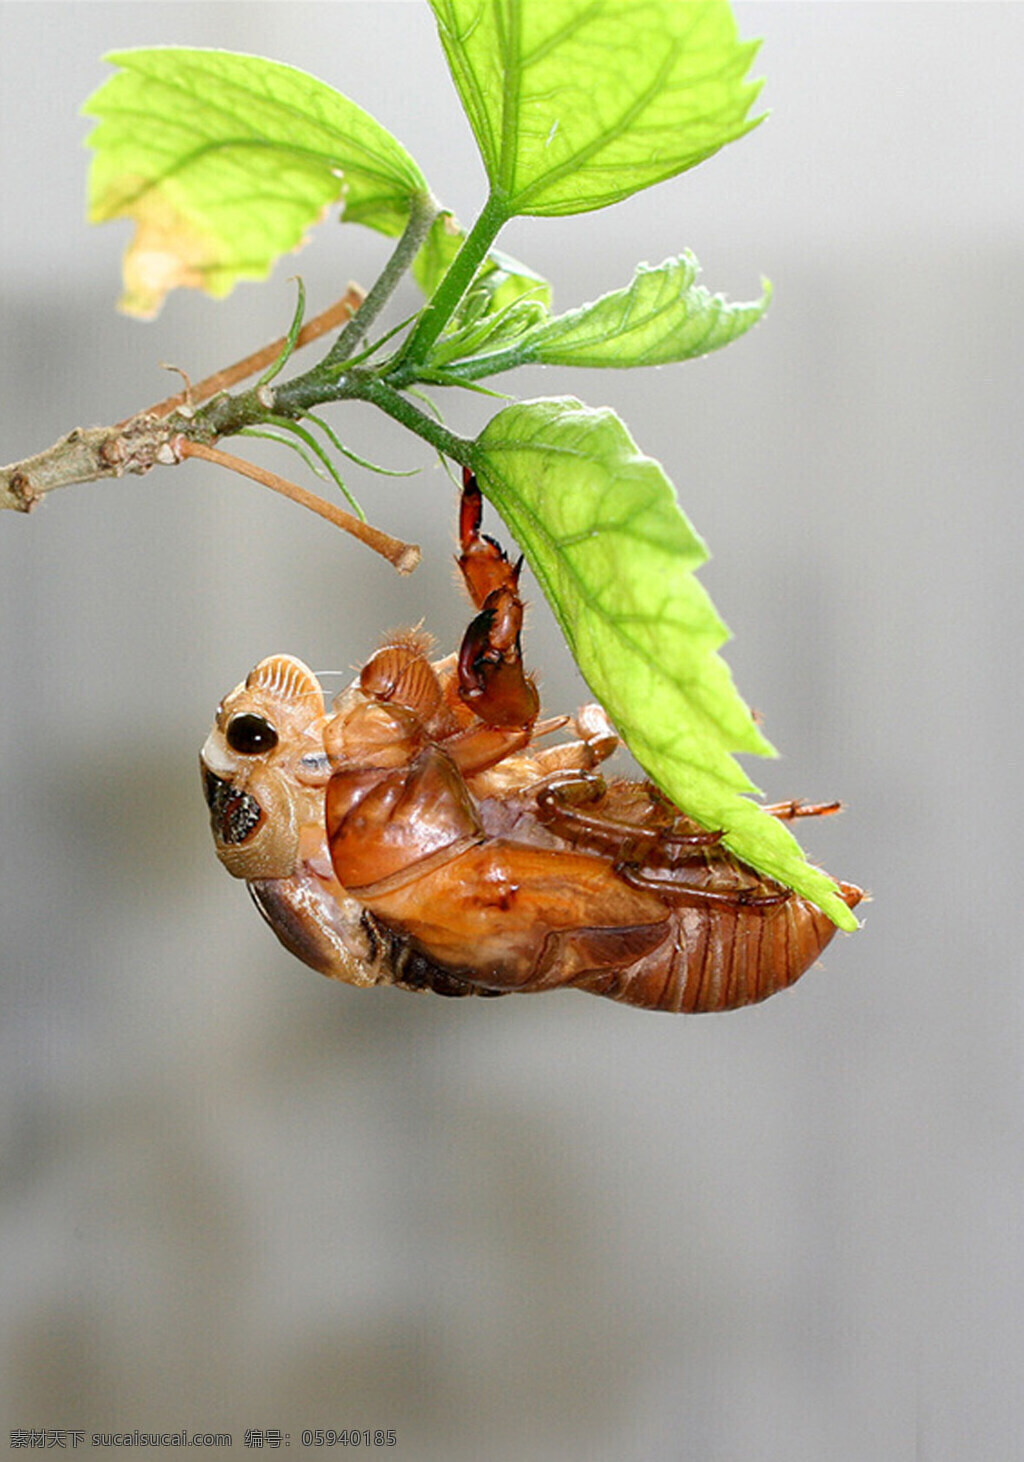 金蝉 金蝉脱壳 知了猴 绿叶 生物世界 昆虫 摄影图库